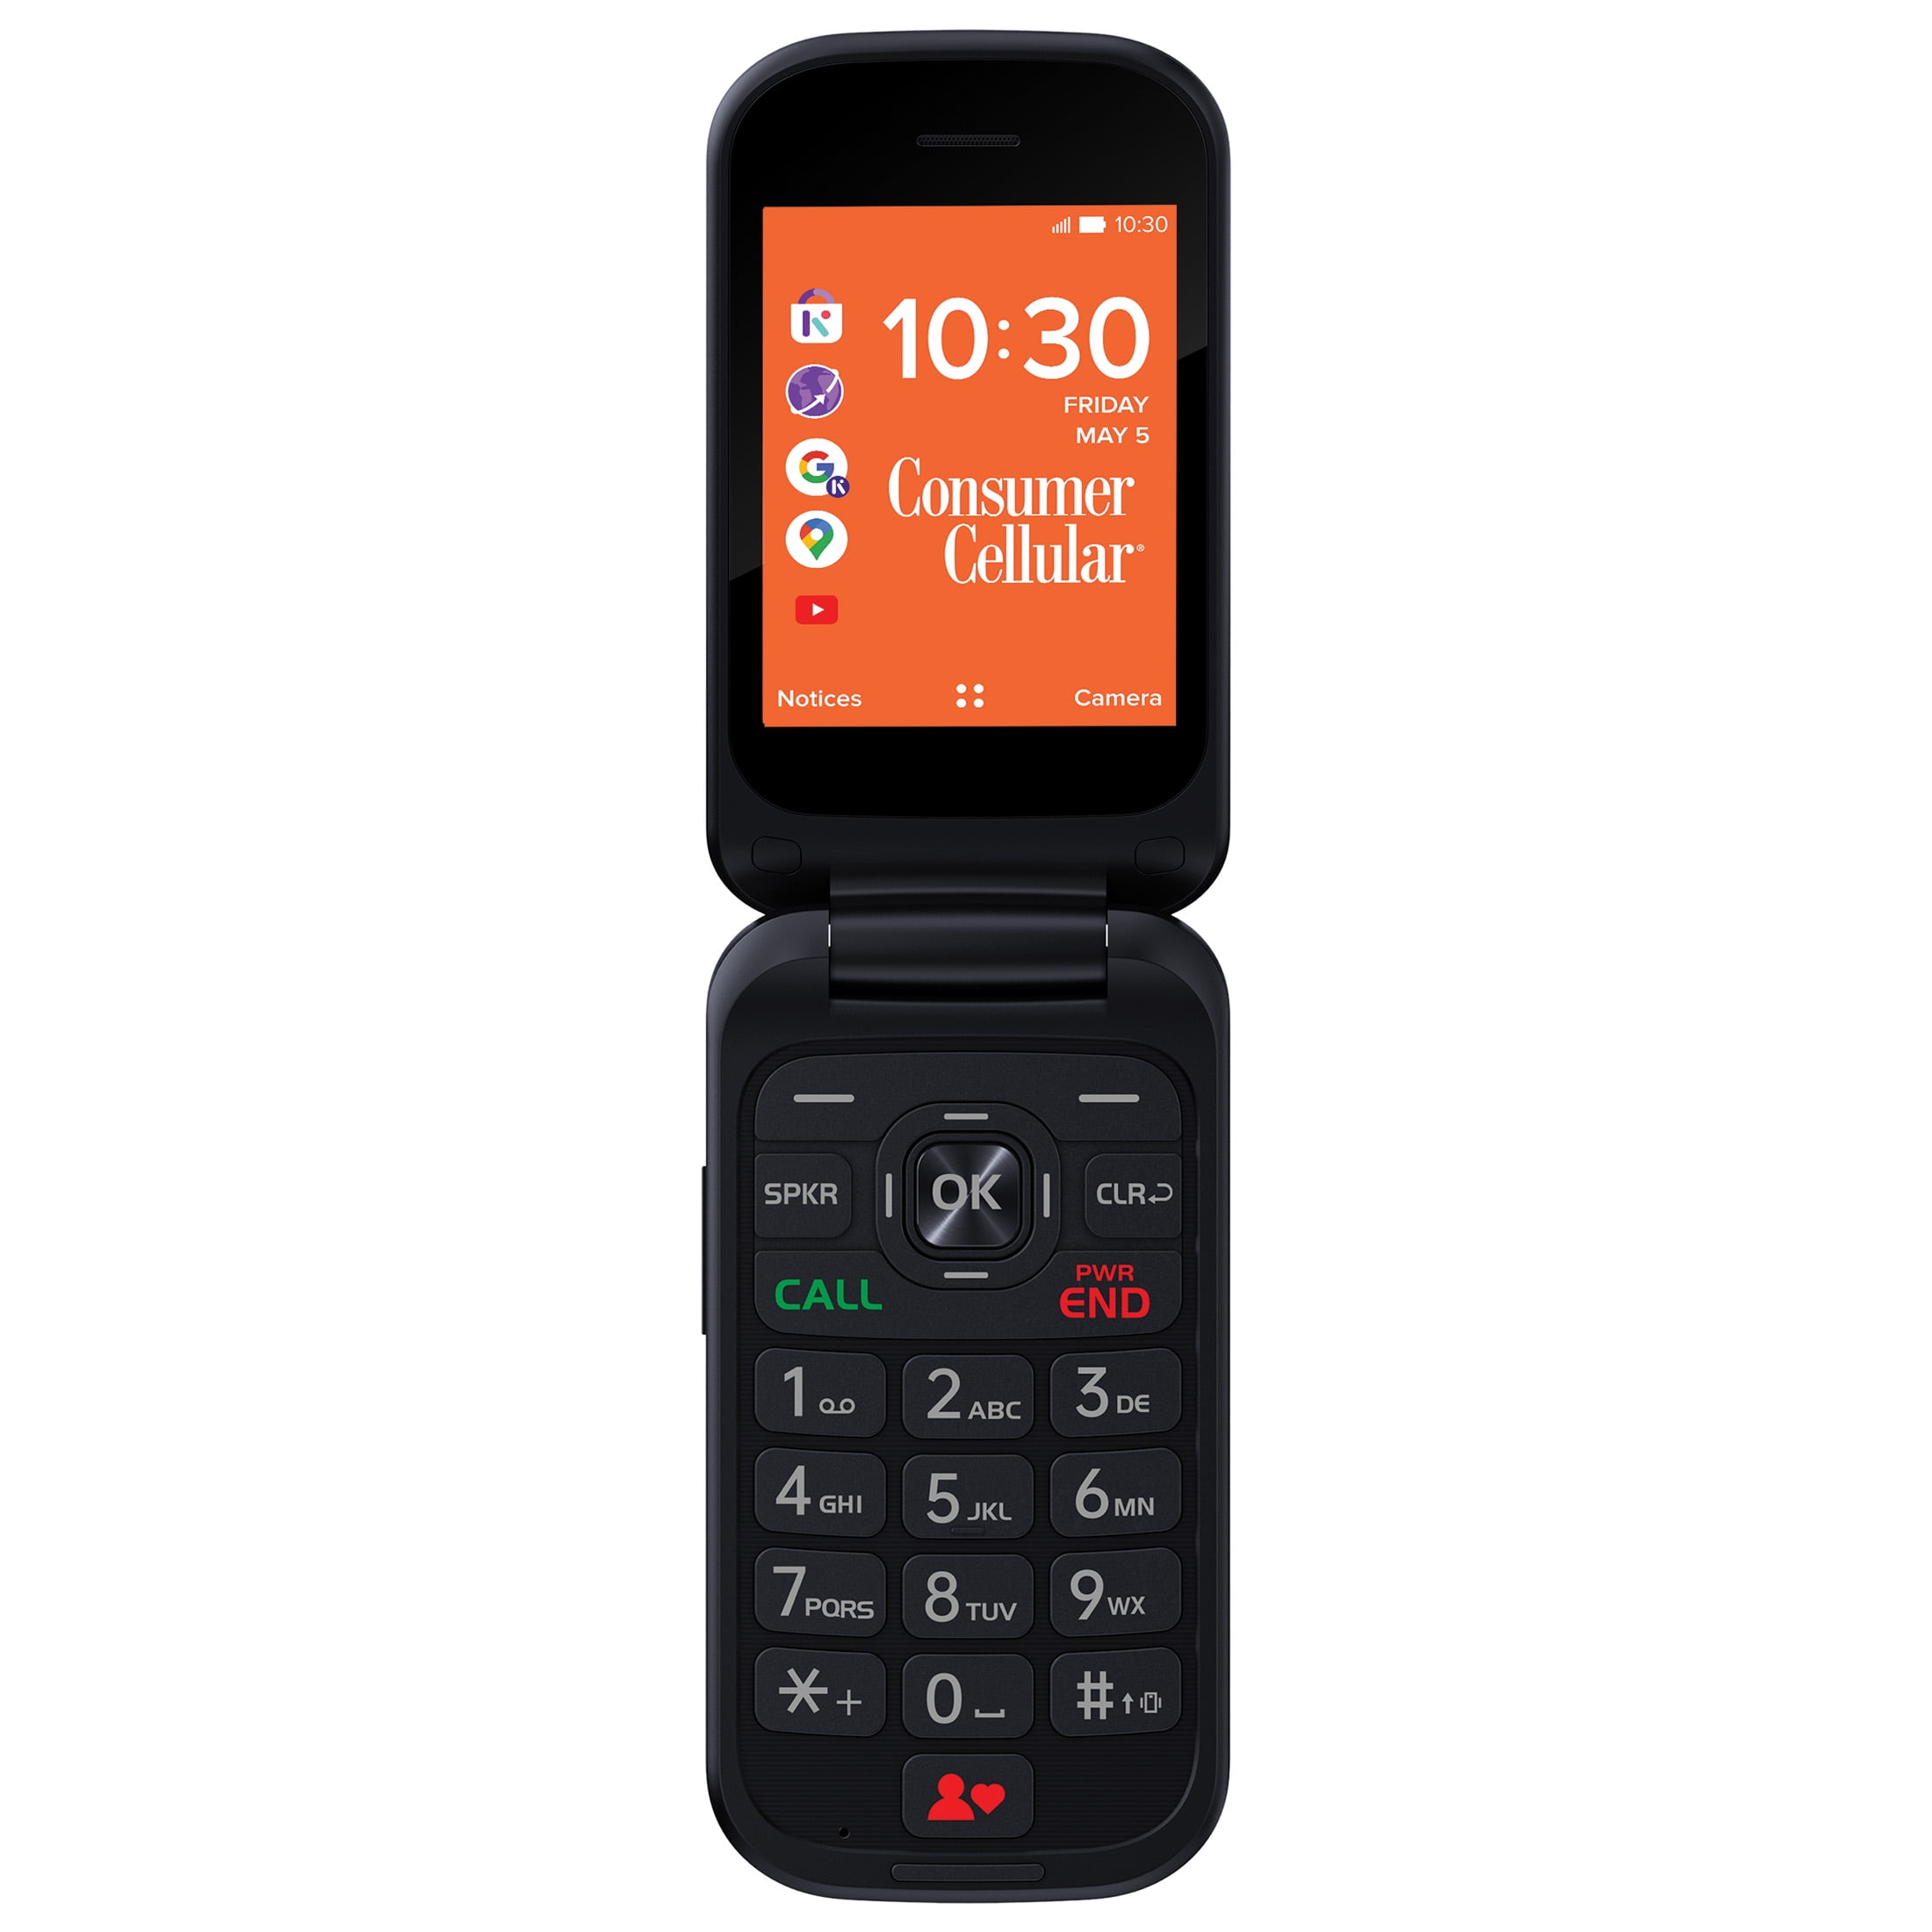 Consumer Cellular Iris, 8GB, Red - Flip Phone 